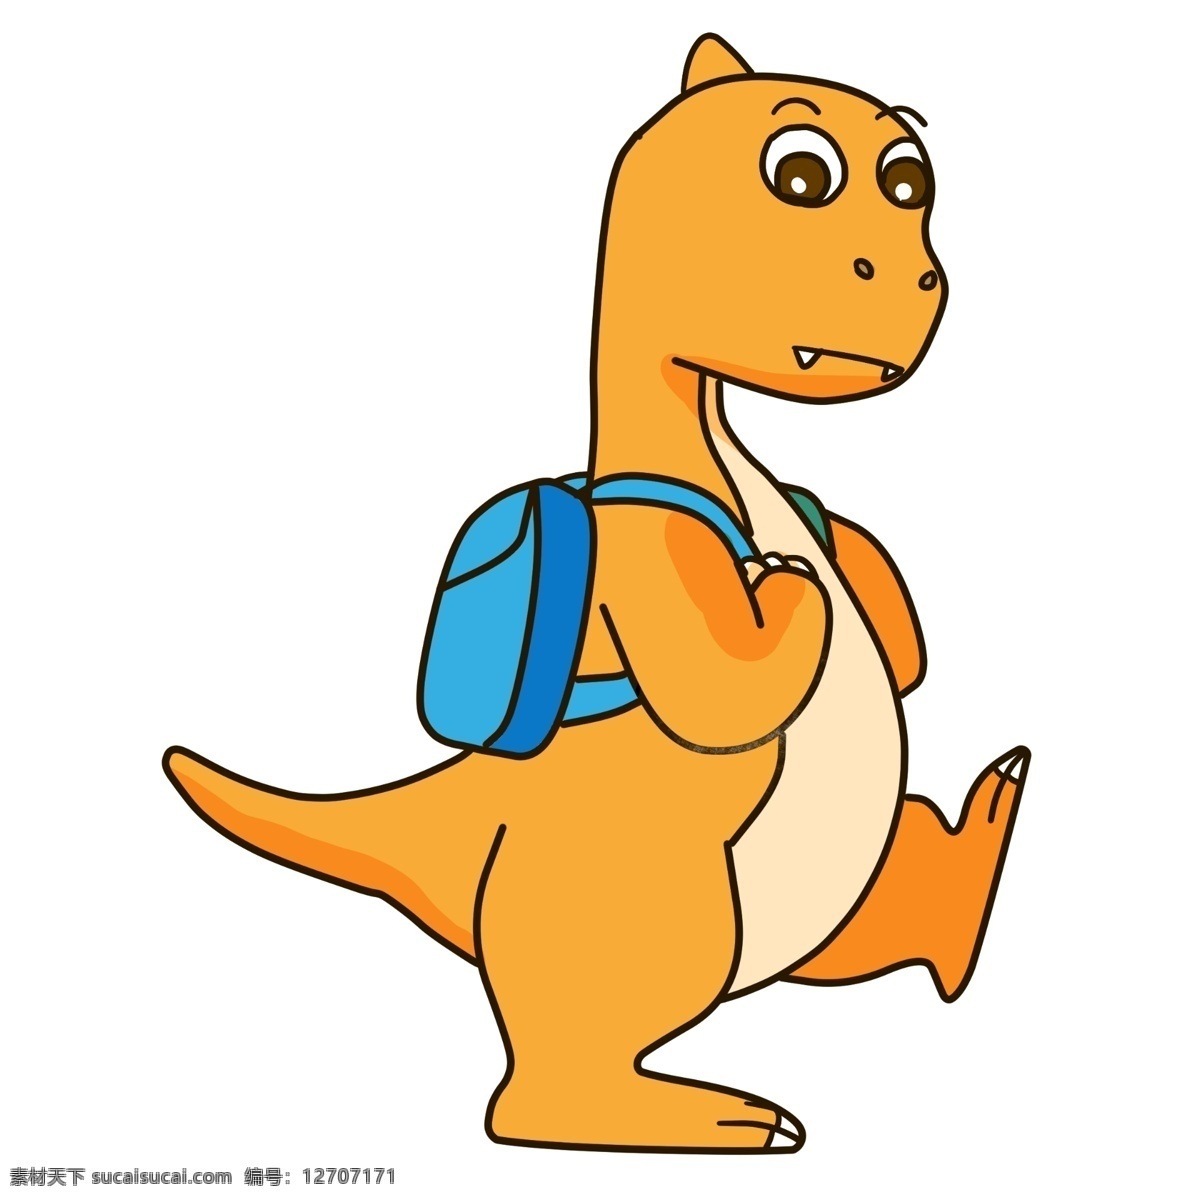 背书 包 小 恐龙 插画 黄色的恐龙 卡通插画 恐龙插画 动物插画 白垩纪恐龙 恐龙玩具 背书包的恐龙